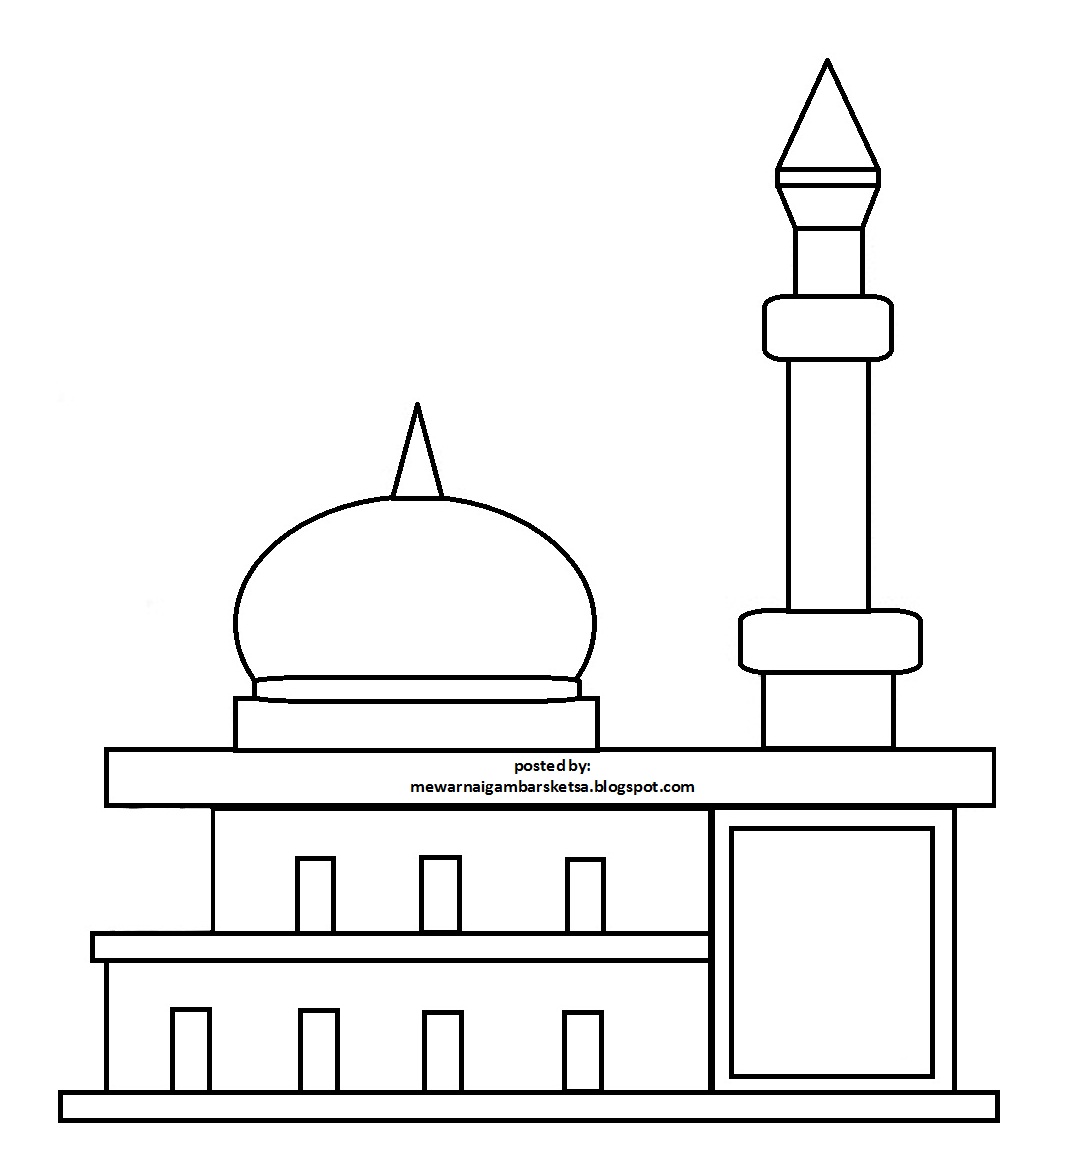 Mewarnai Gambar Sketsa Masjid 38 Download Paud